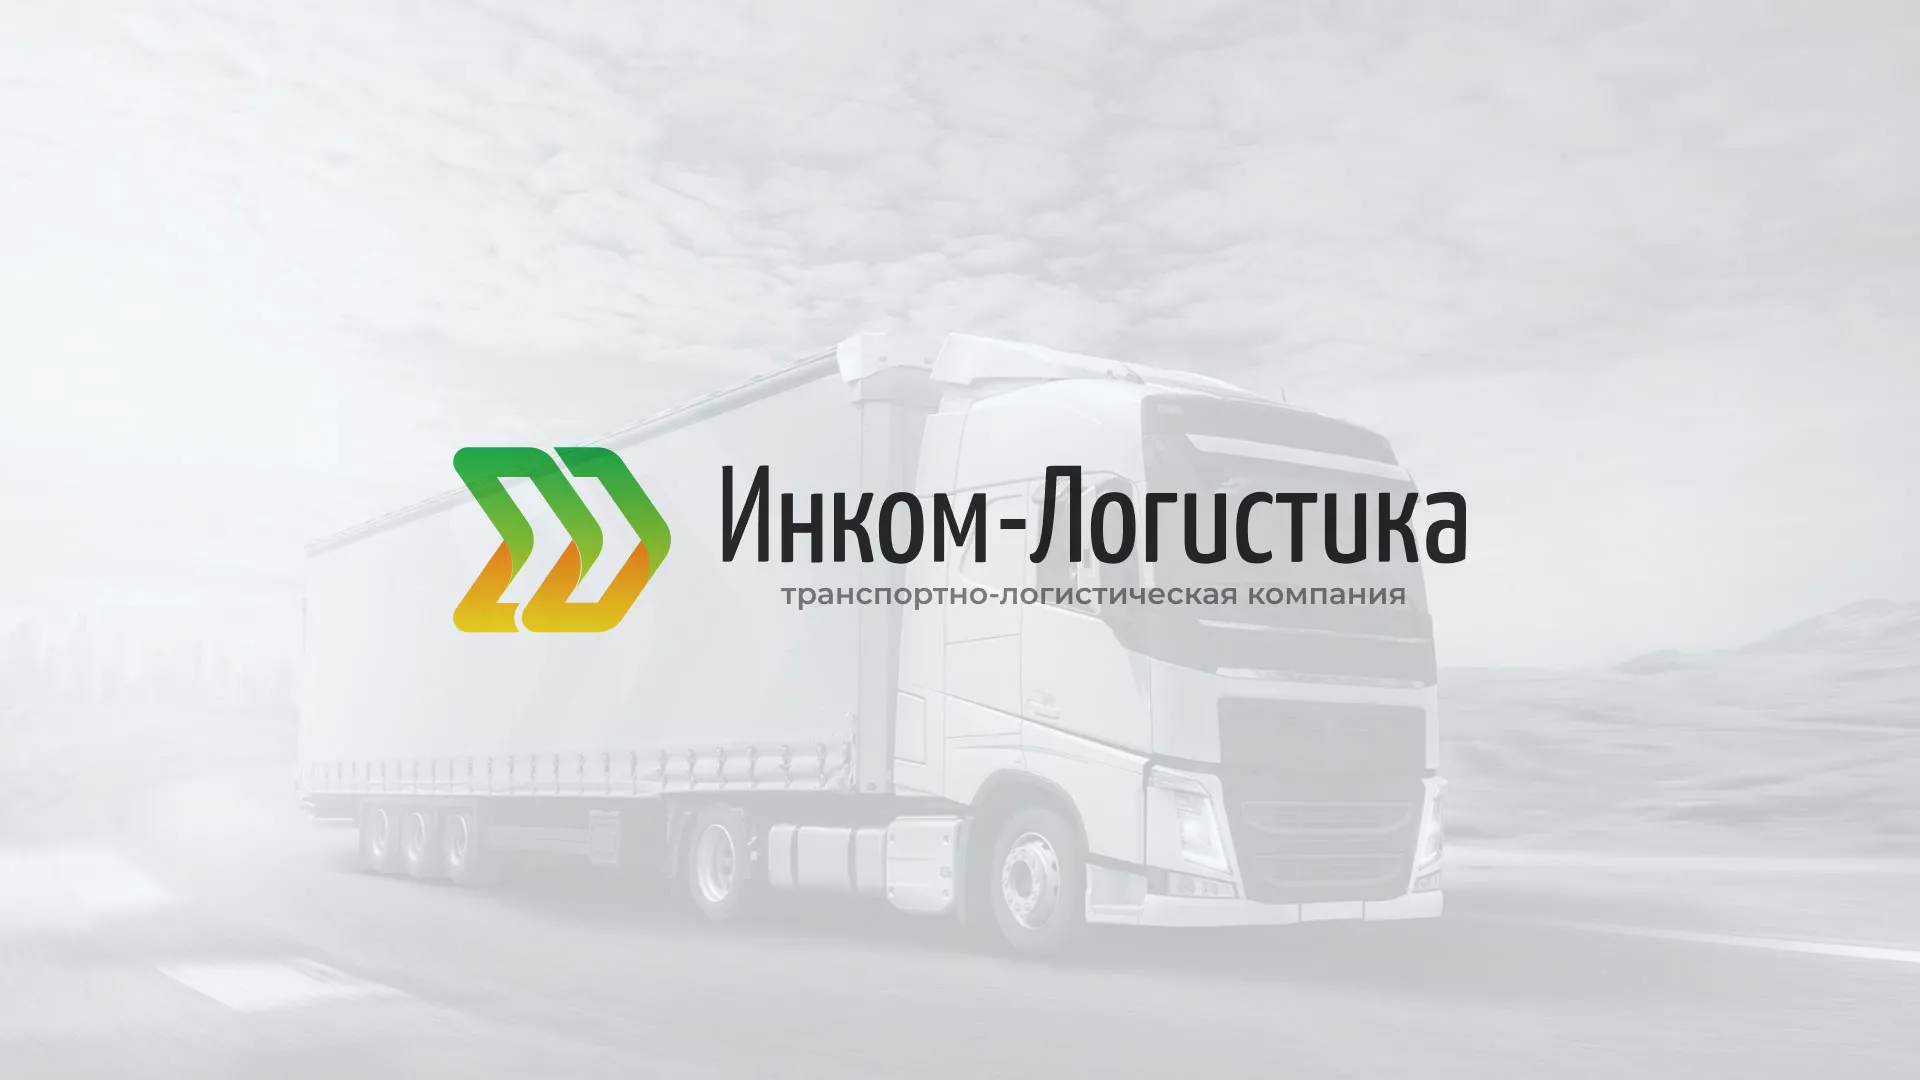 Разработка логотипа и сайта компании «Инком-Логистика» в Переславле-Залесском